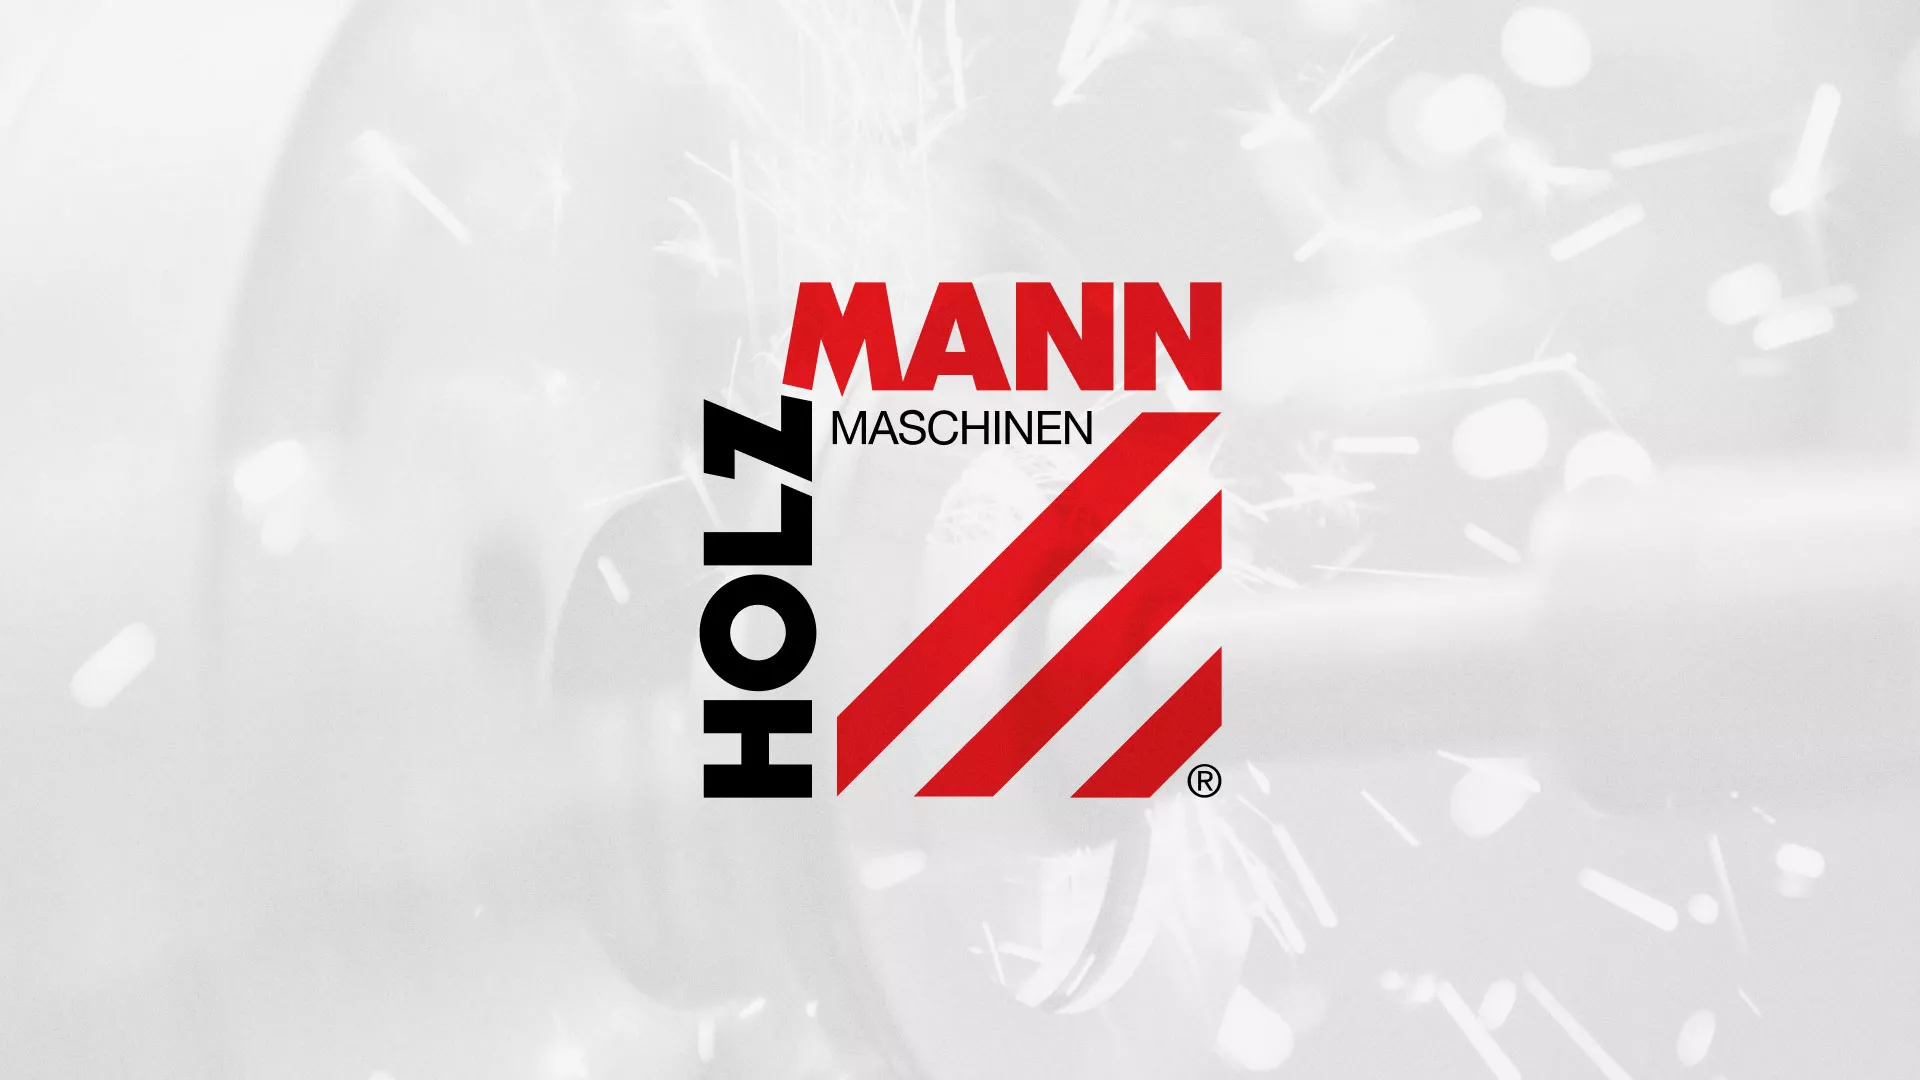 Создание сайта компании «HOLZMANN Maschinen GmbH» в Жуковке